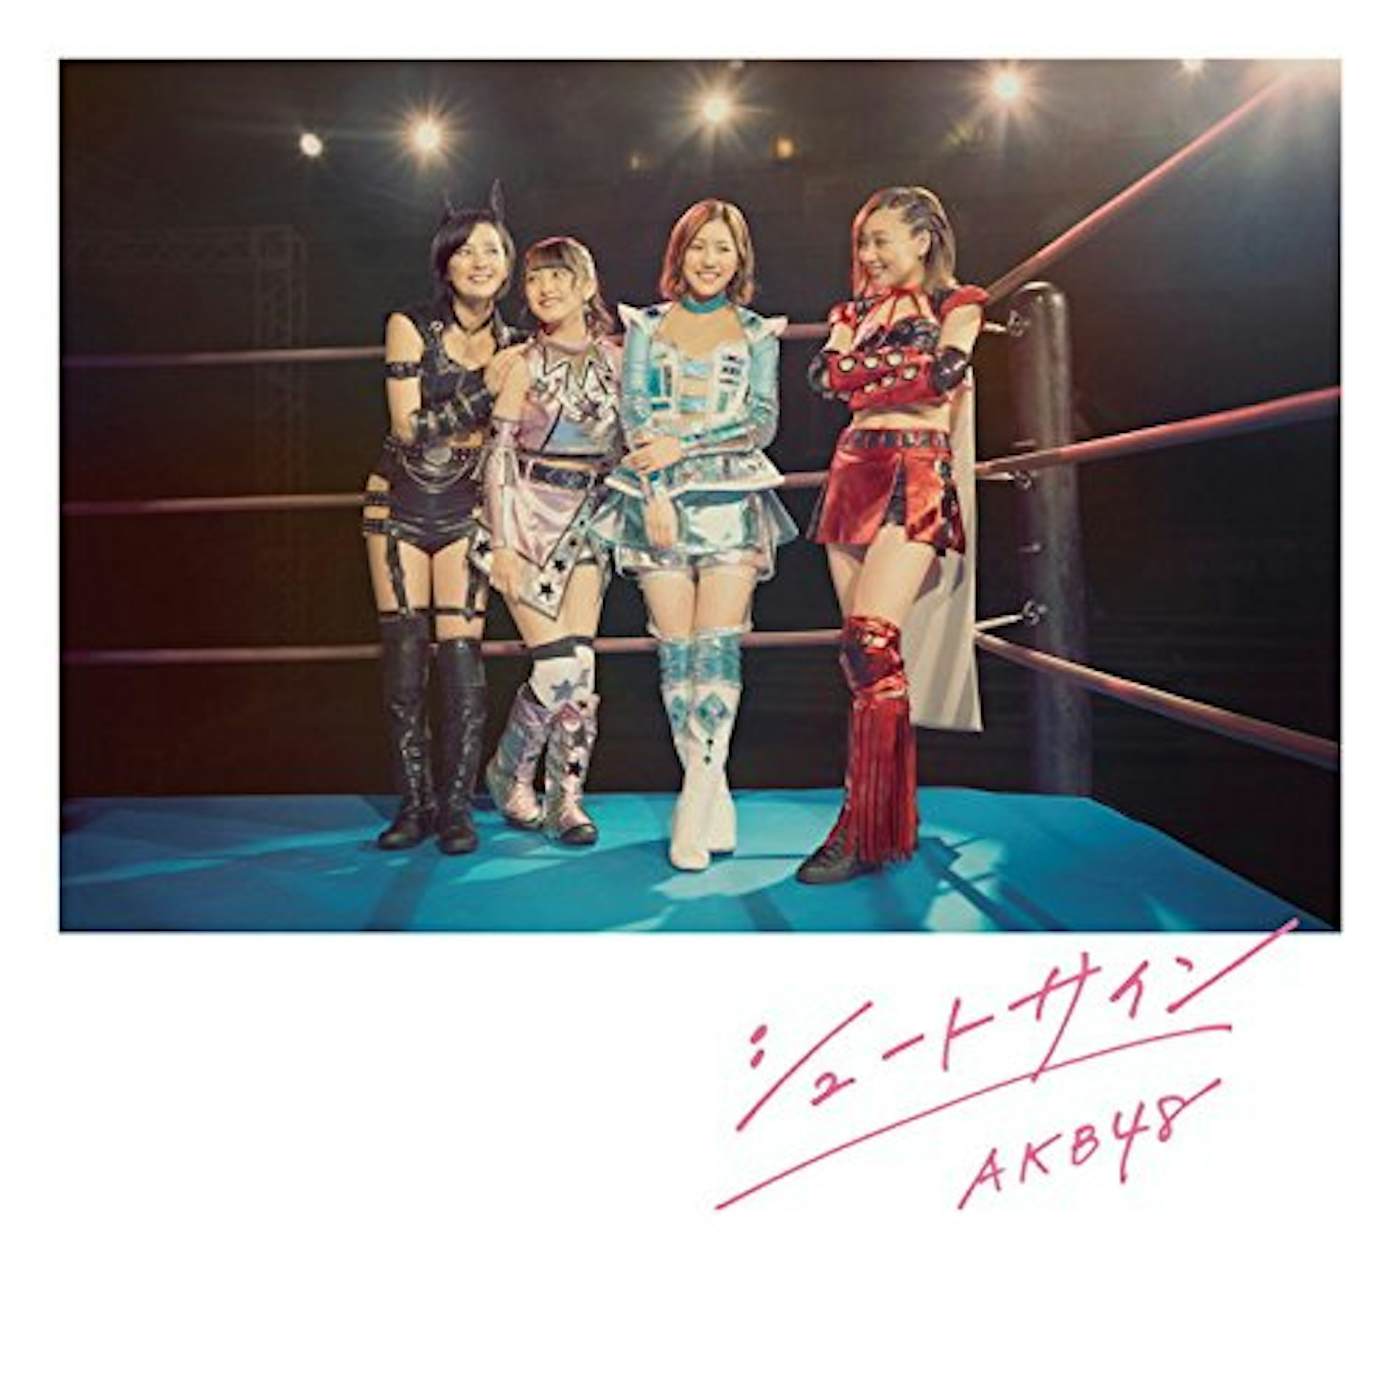 AKB48 SHOOT SIGN (TYPE-IV) CD